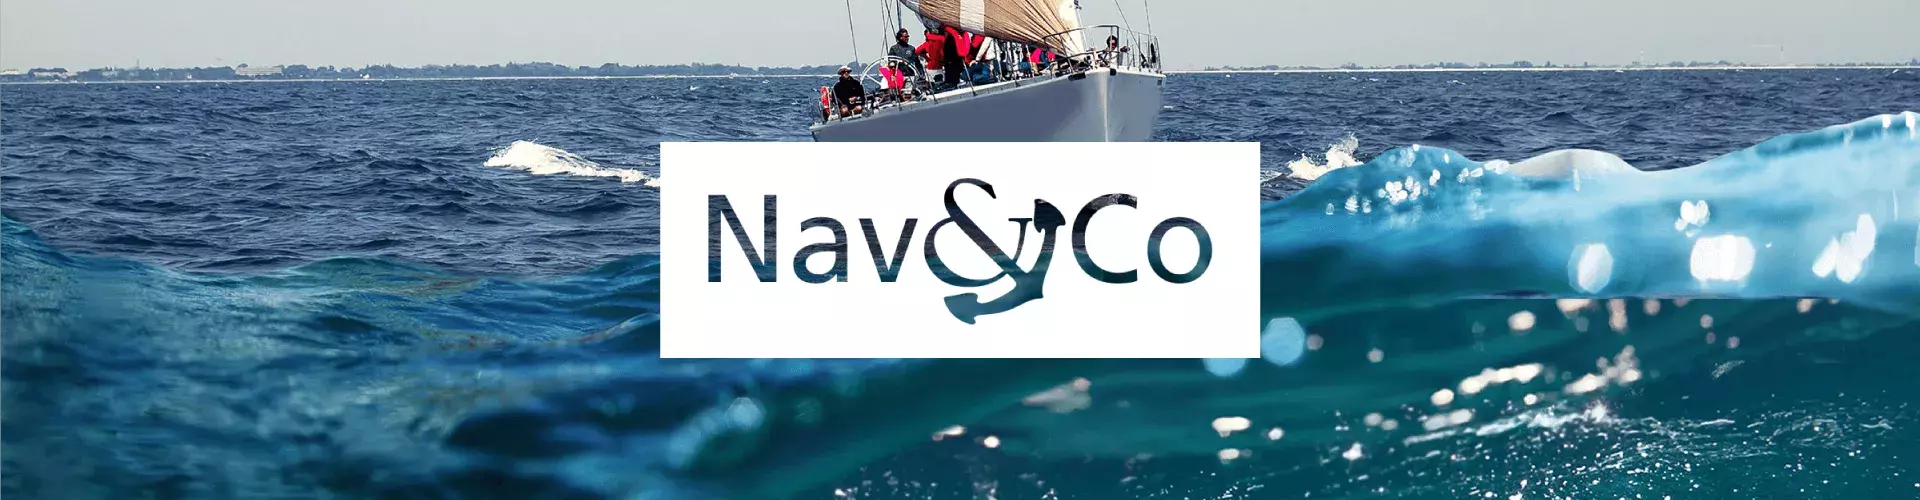 Nav&Co